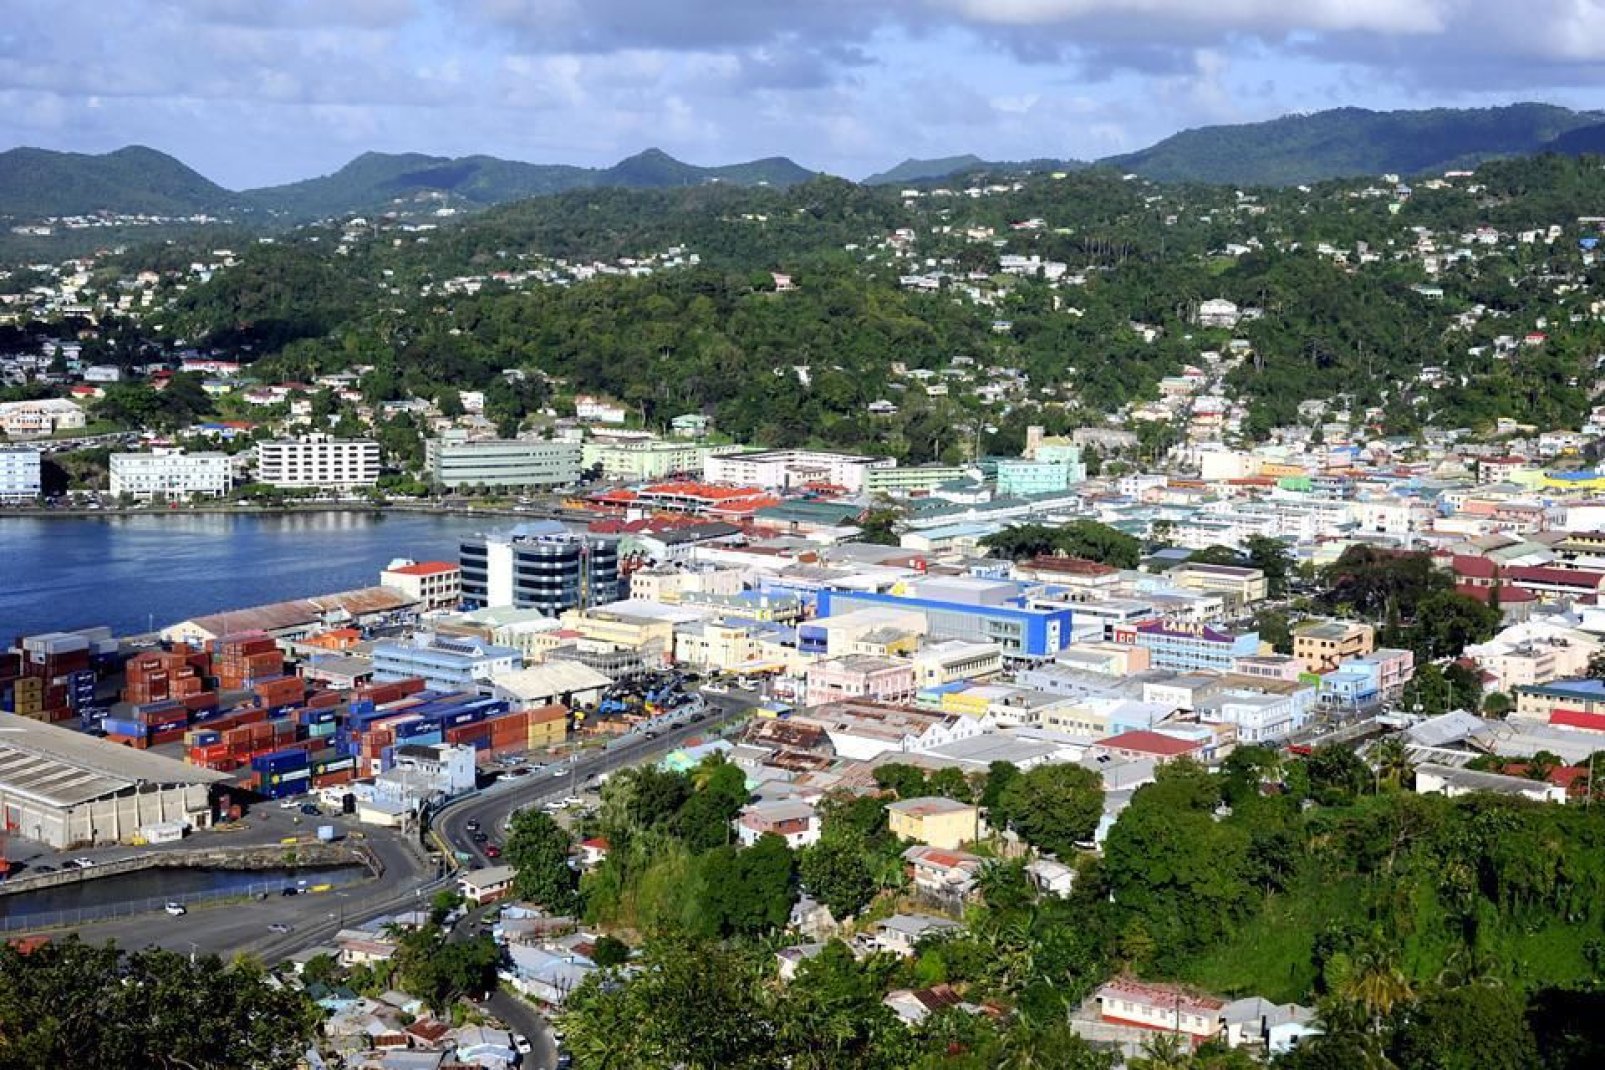 La capital política y económica de Santa Lucía tiene aproximadamente 65 000 habitantes.